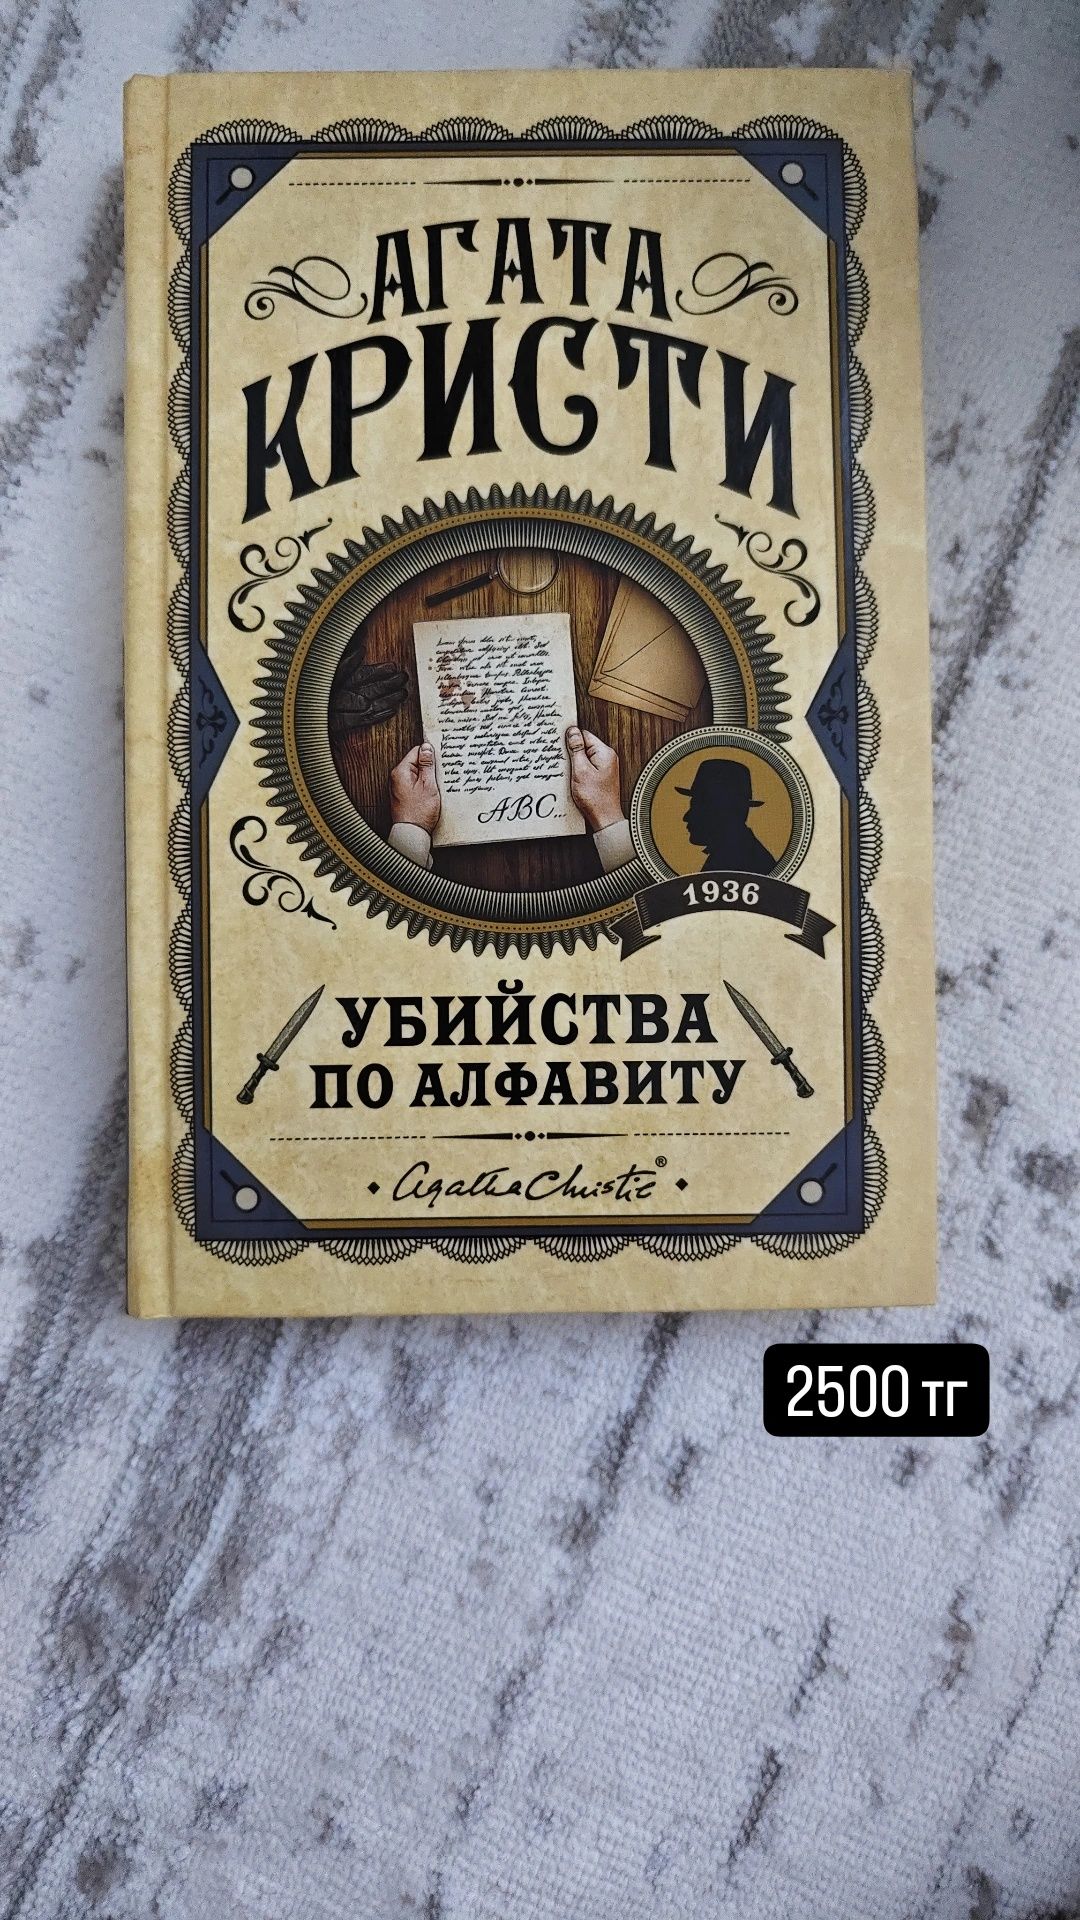 Продам книги Агата Кристи